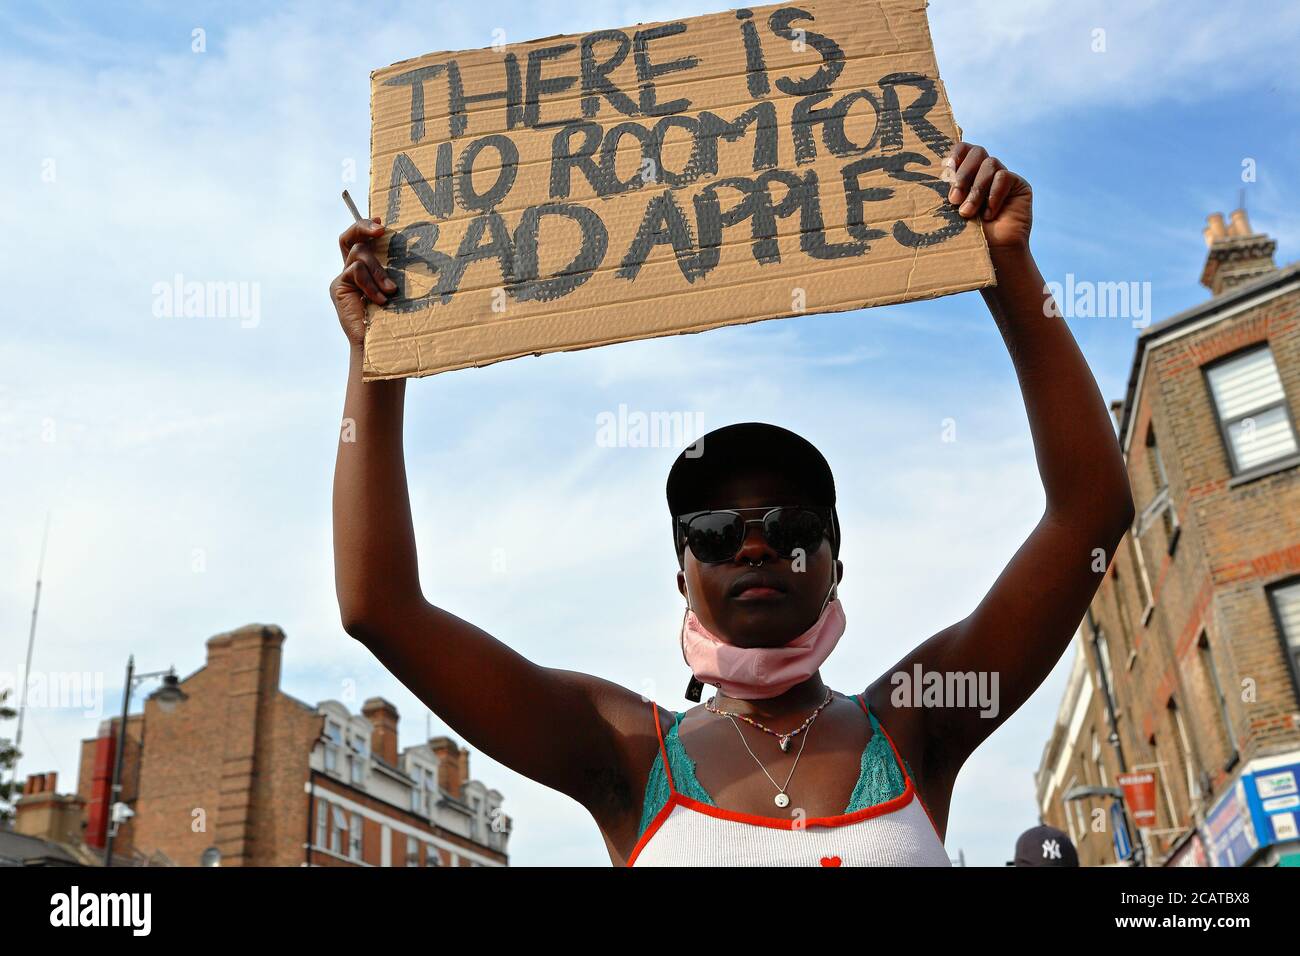 Tottenham - Londra (UK), 8 agosto 2020: Una coalizione di gruppi di attivisti radunati fuori Tottenham polizia stazione di polizia razzismo e violenza. Foto Stock